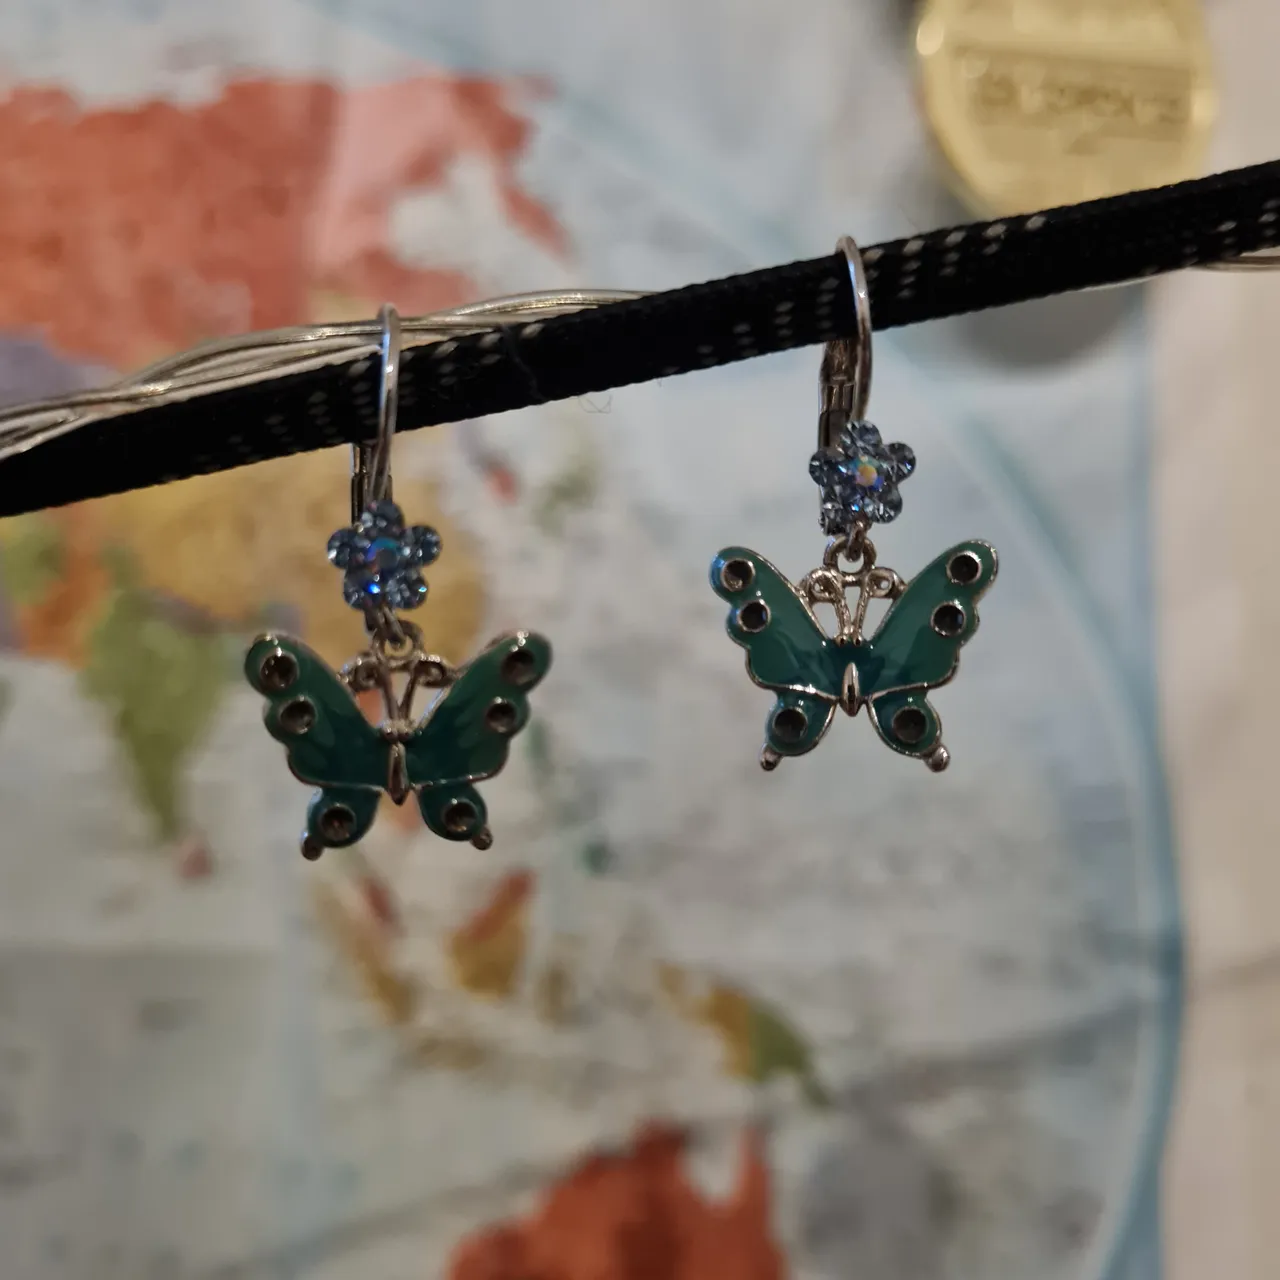 Butterfly earrings photo 1